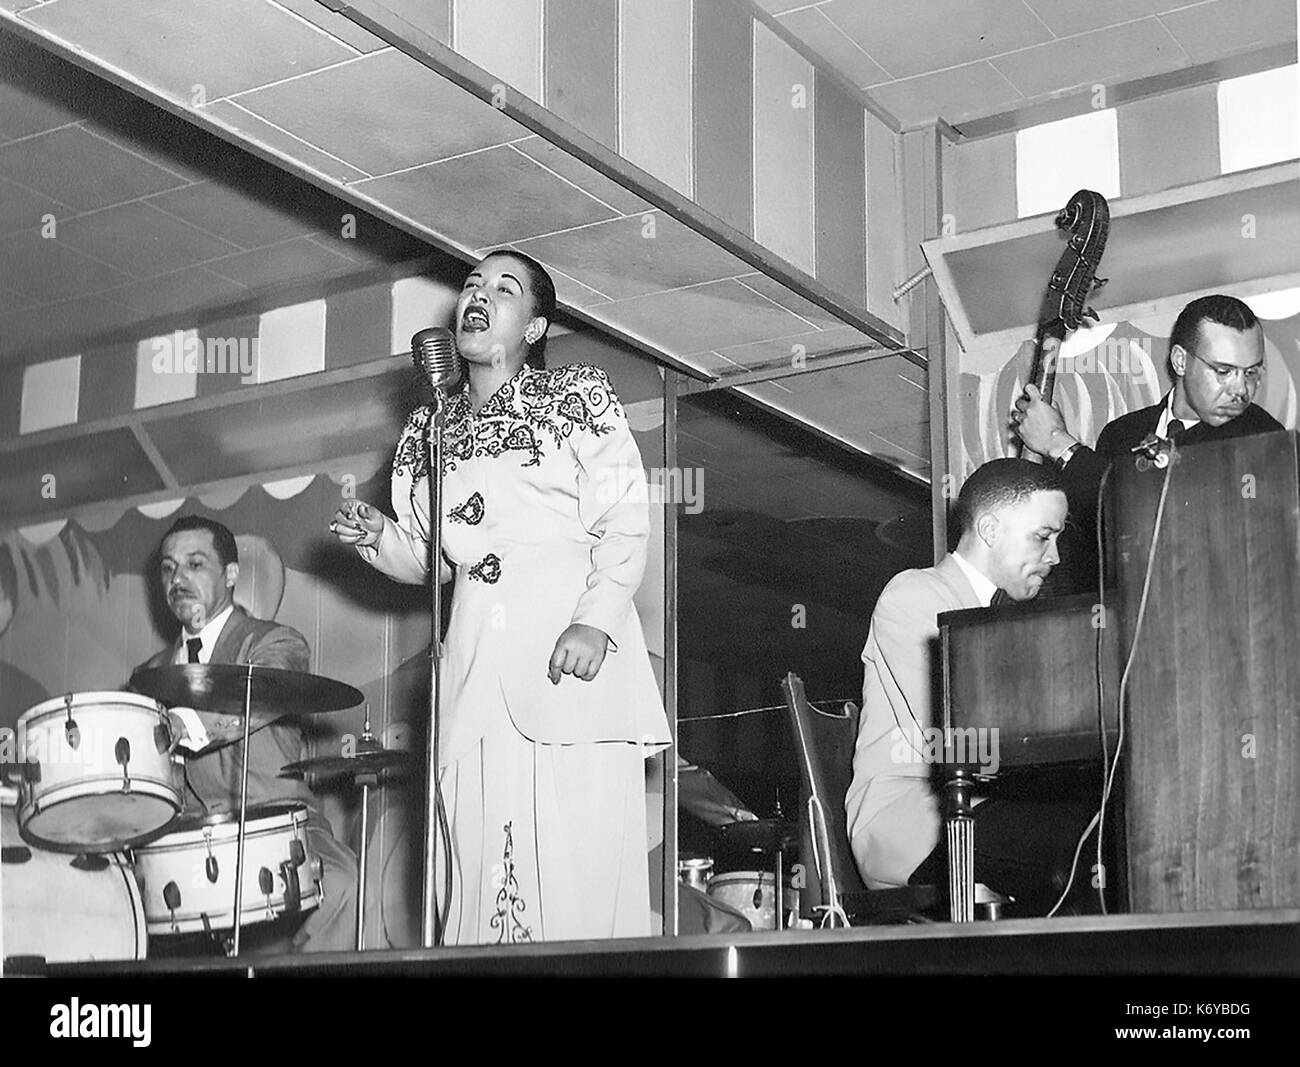 Billie HOLLIDAY (1915-1959) chanteuse américaine de jazz et de blues vers 1949 Banque D'Images